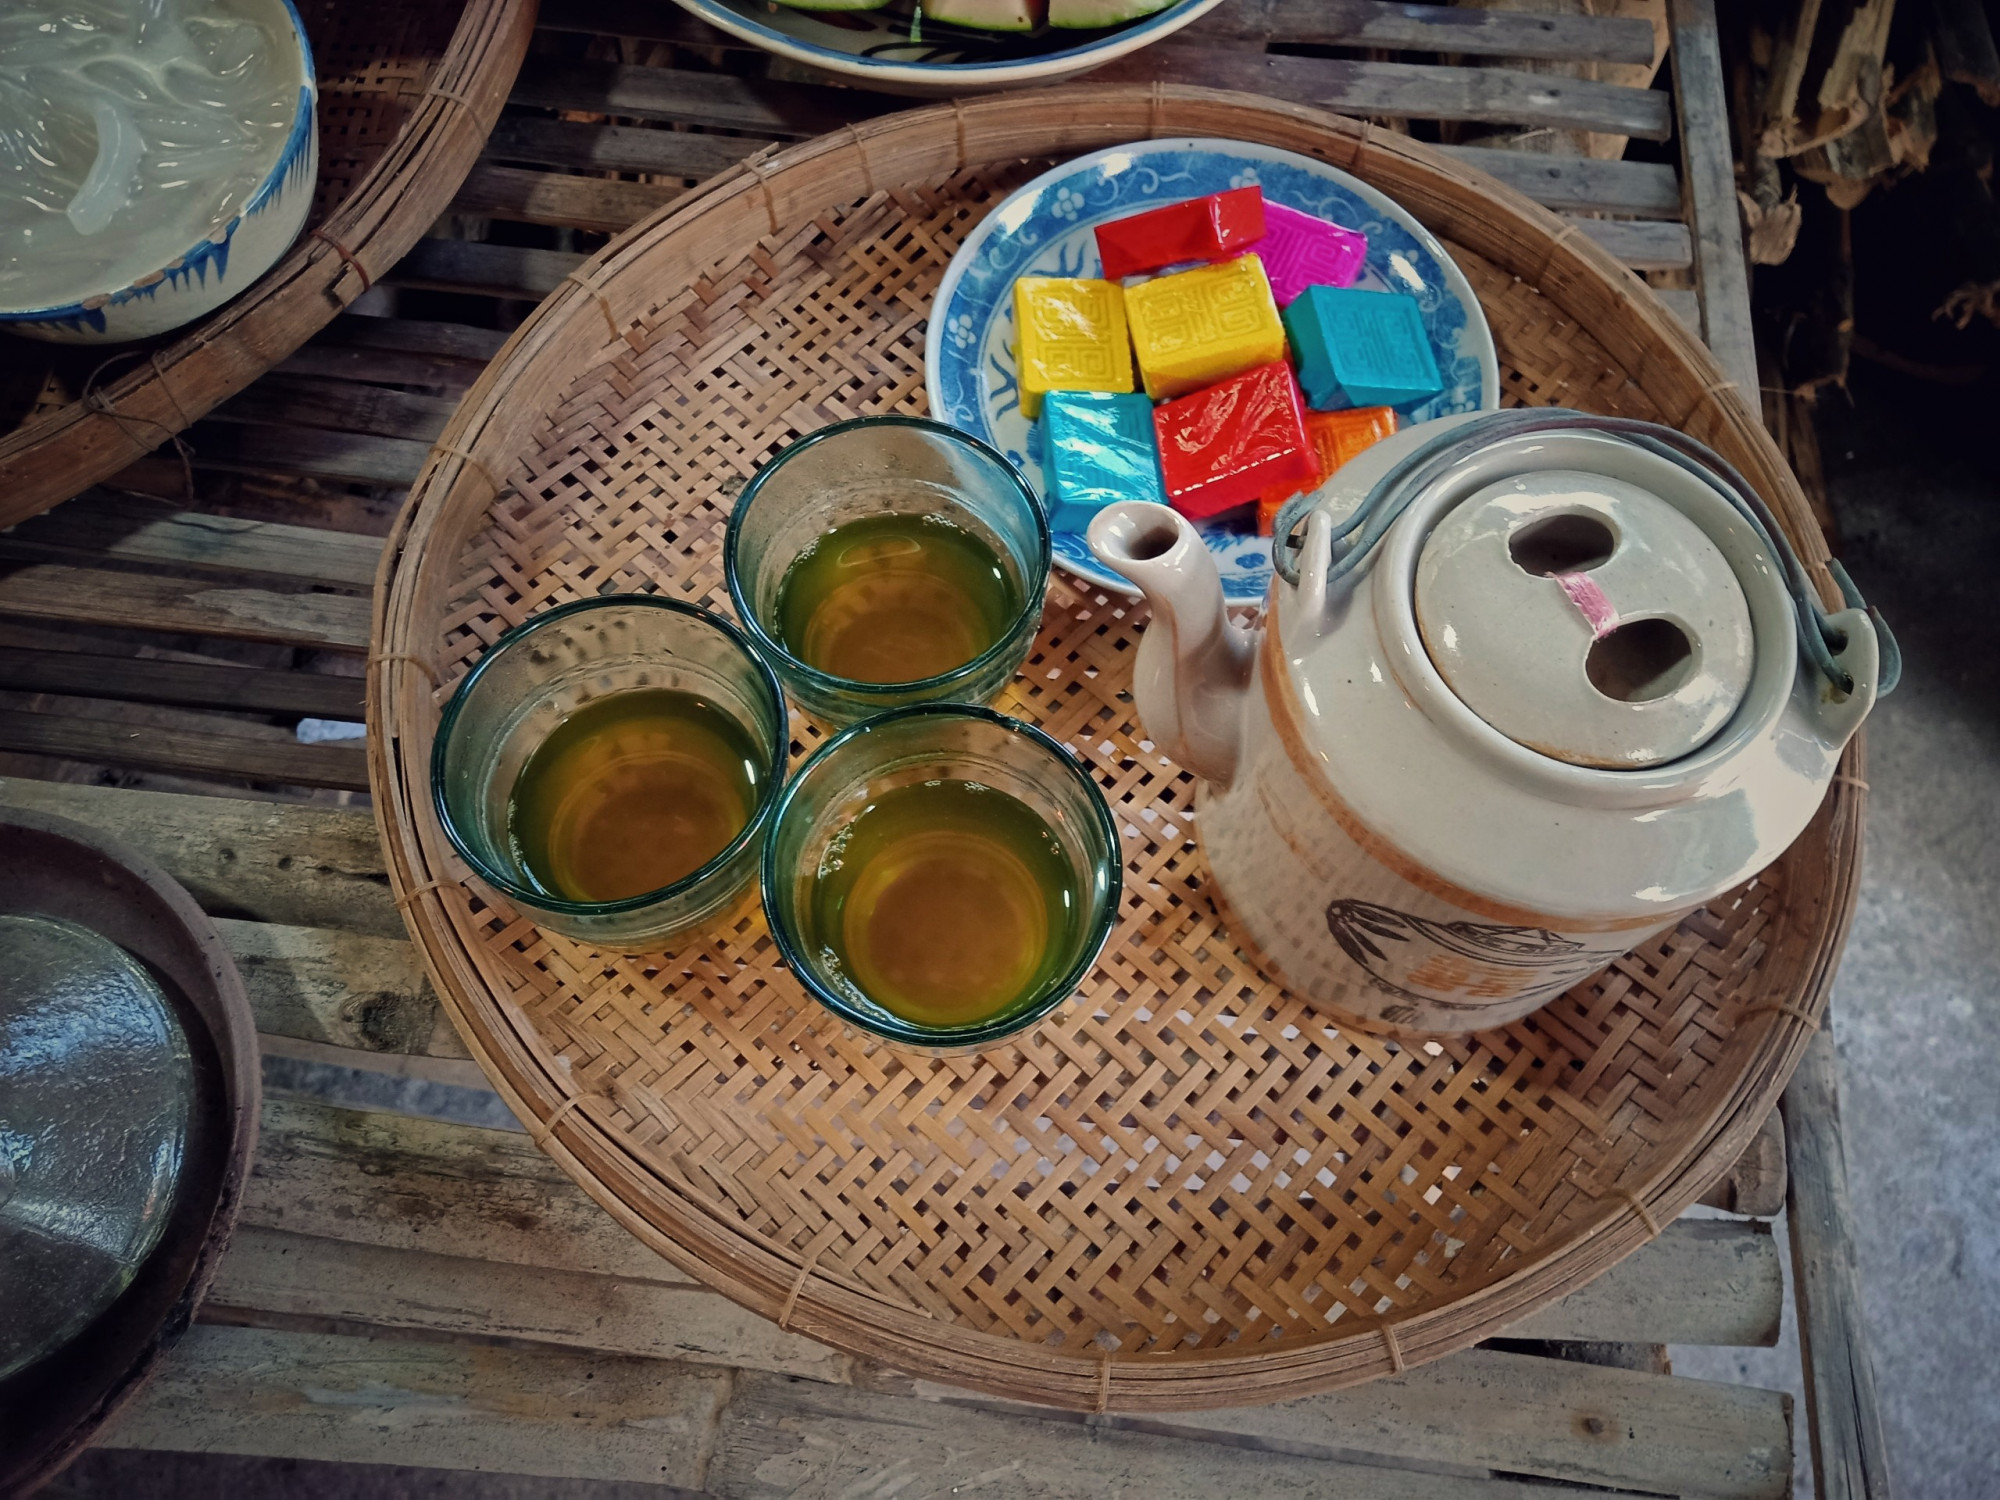 Mâm cúng có bình trà nước cổ xưa, đi kèm với một ít bánh được bọc bởi giấy có màu sắc nổi bật. 